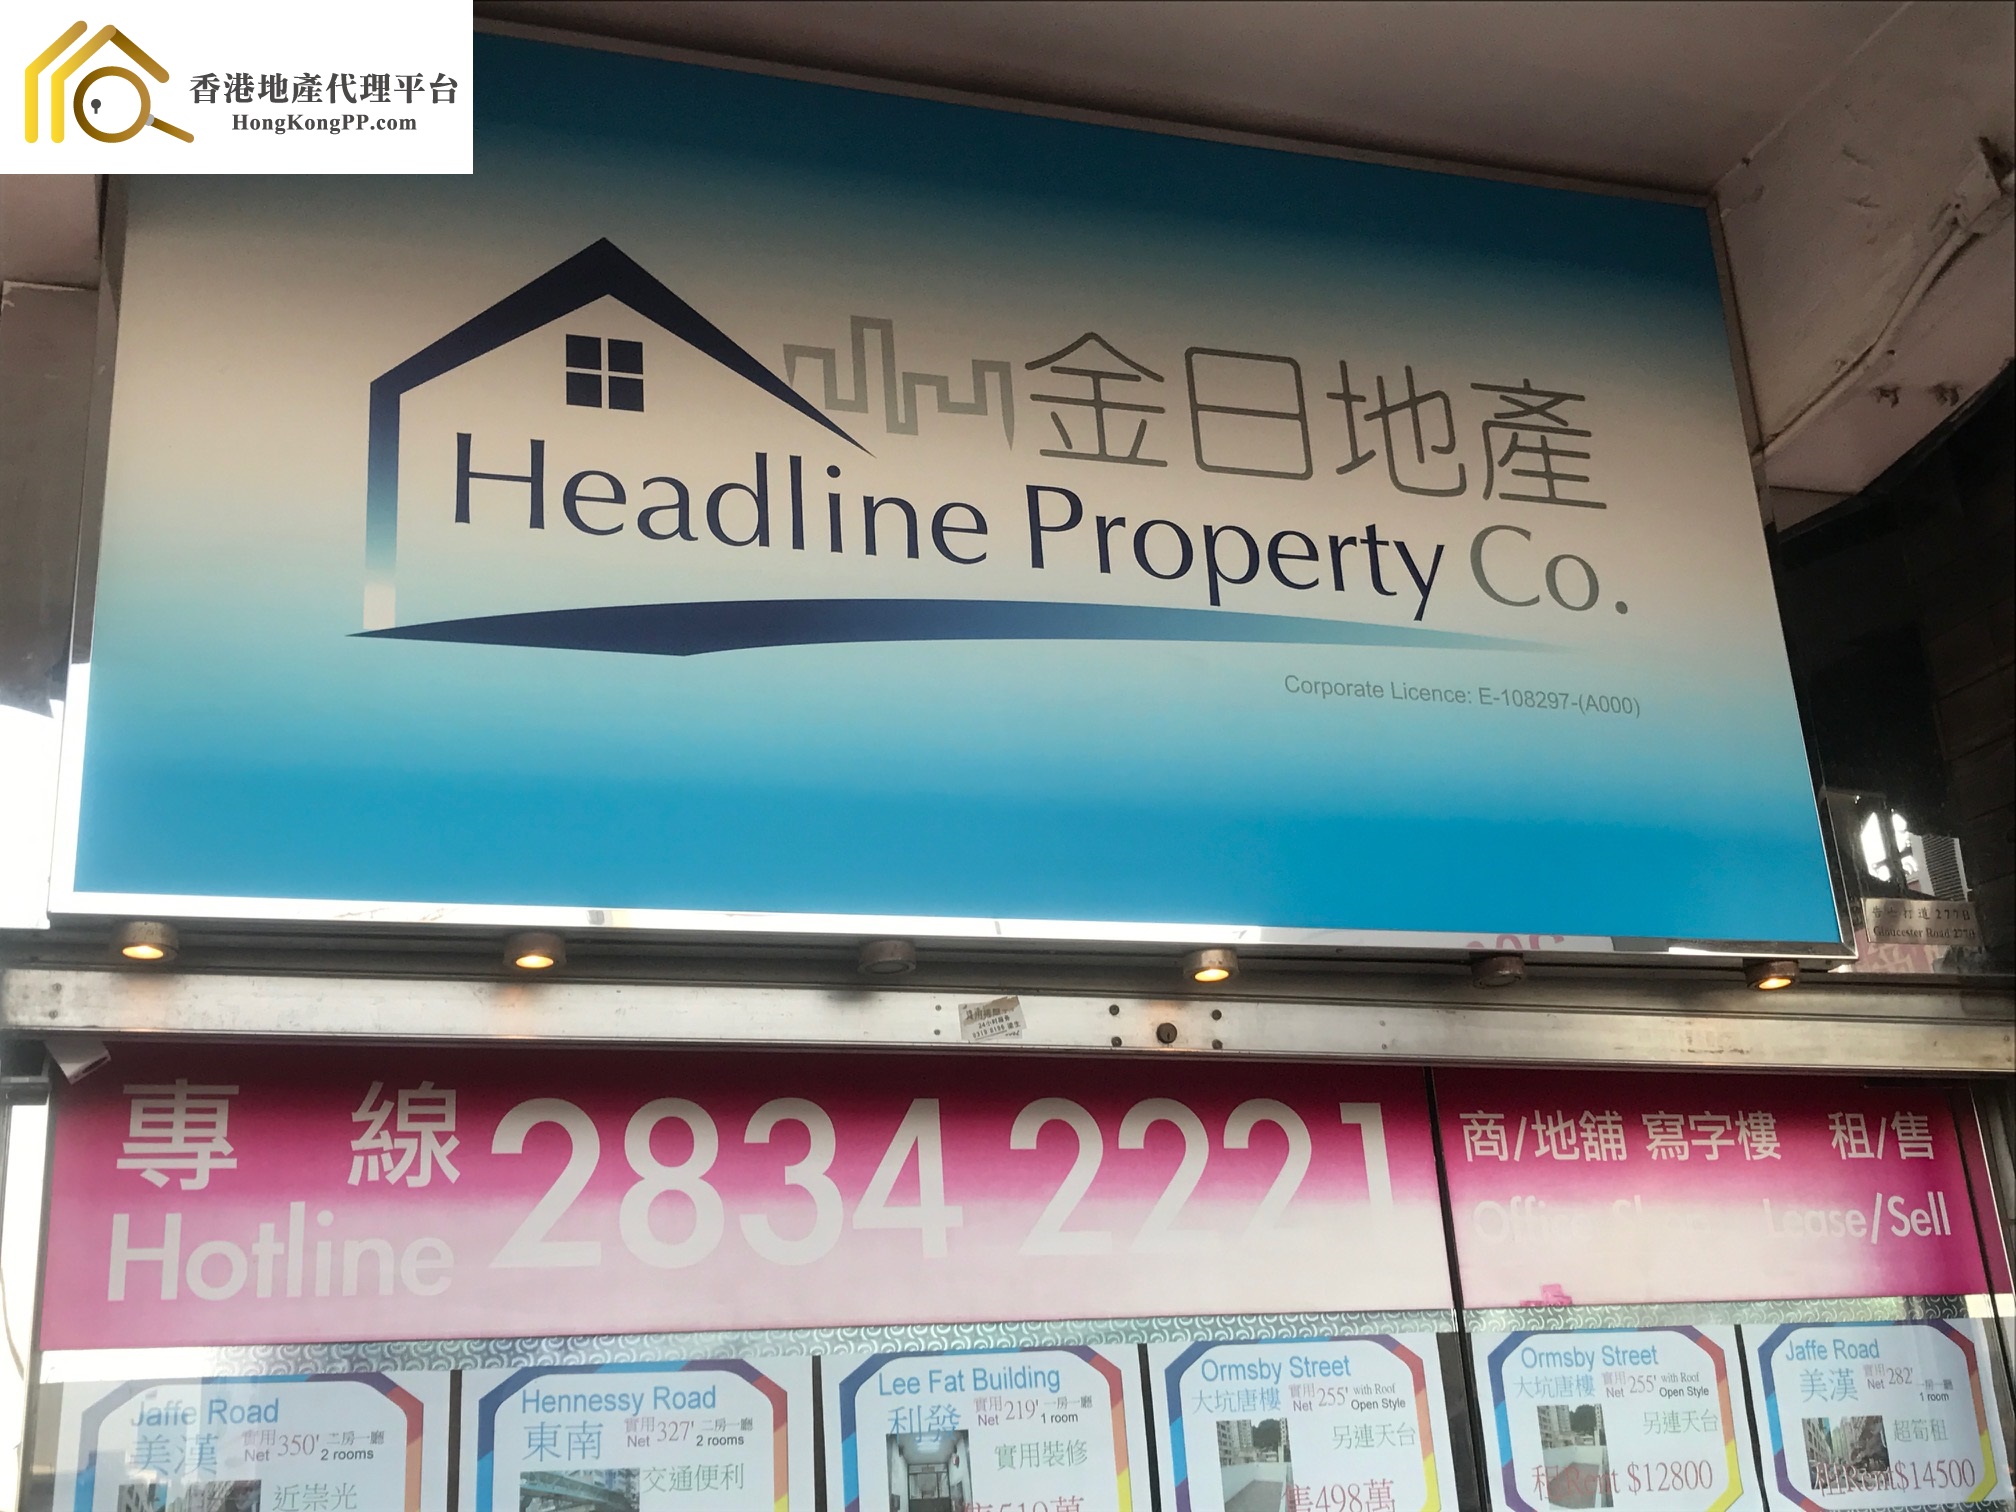 地產代理公司: 金日地產 Headline Property